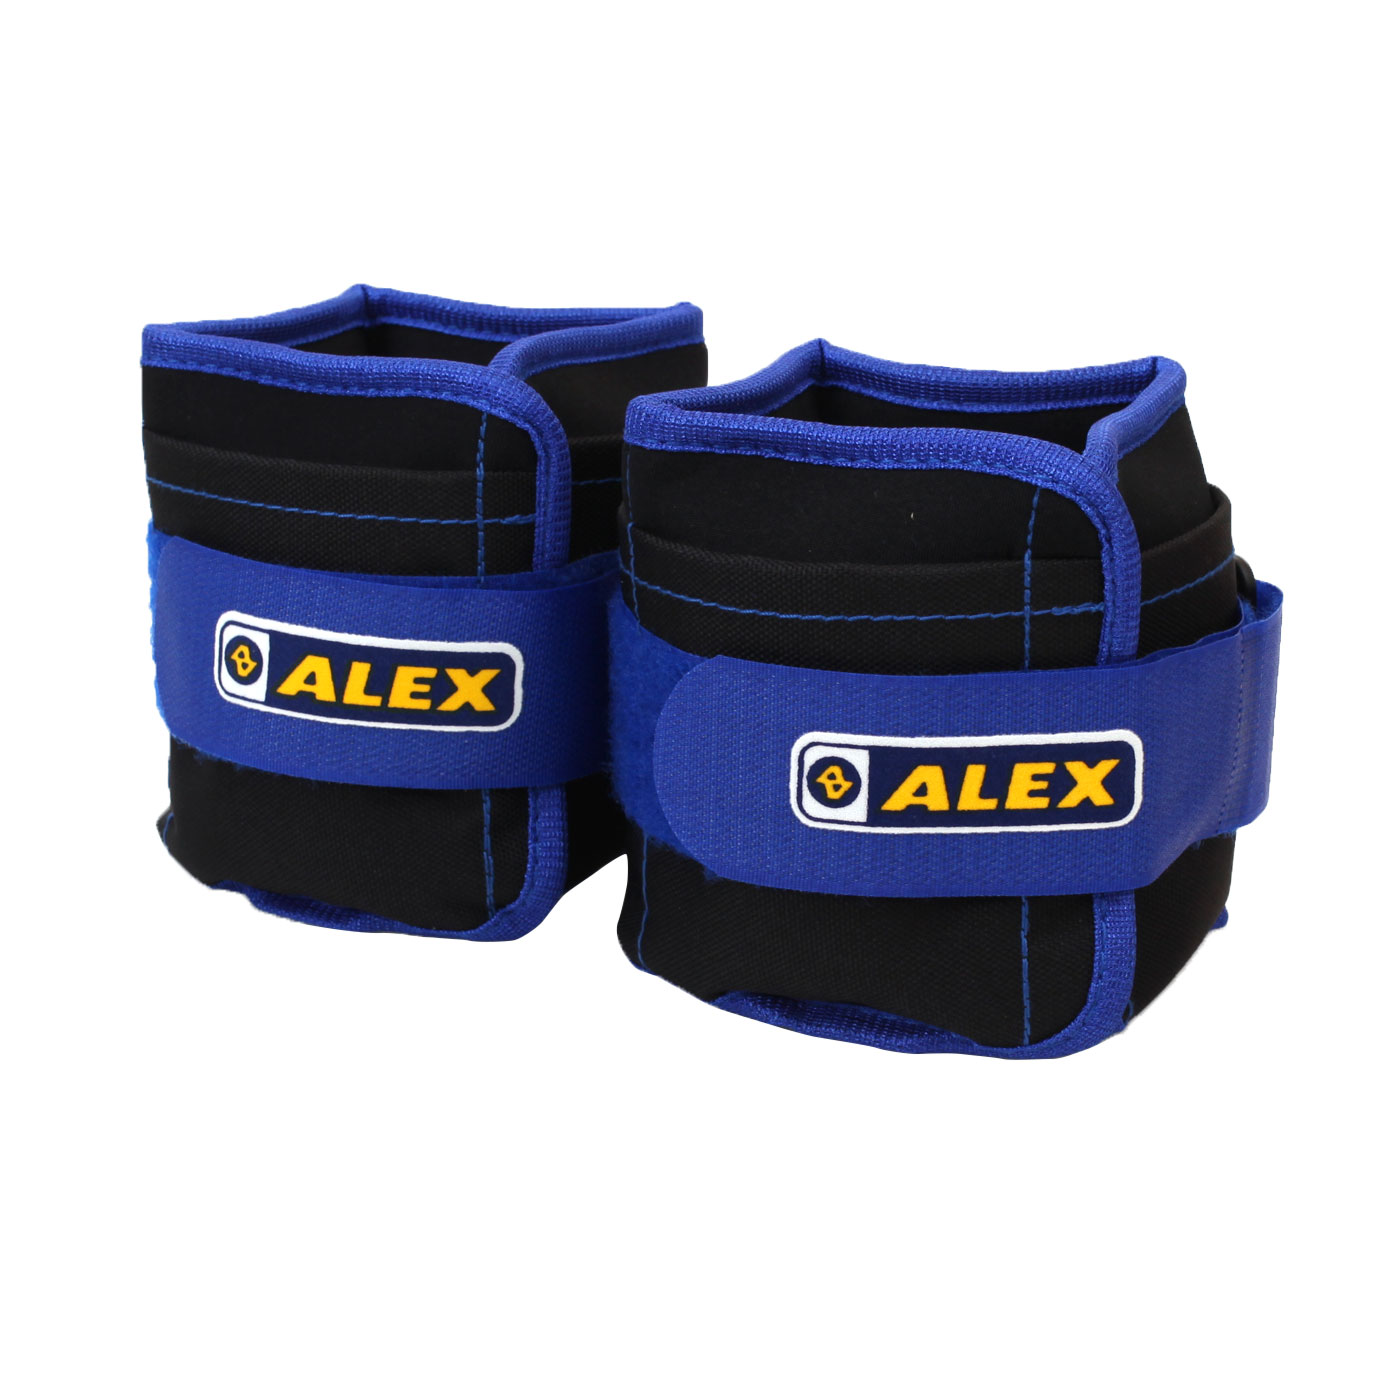 ALEX 沙包型加重器 3kg C-4903 - 黑藍